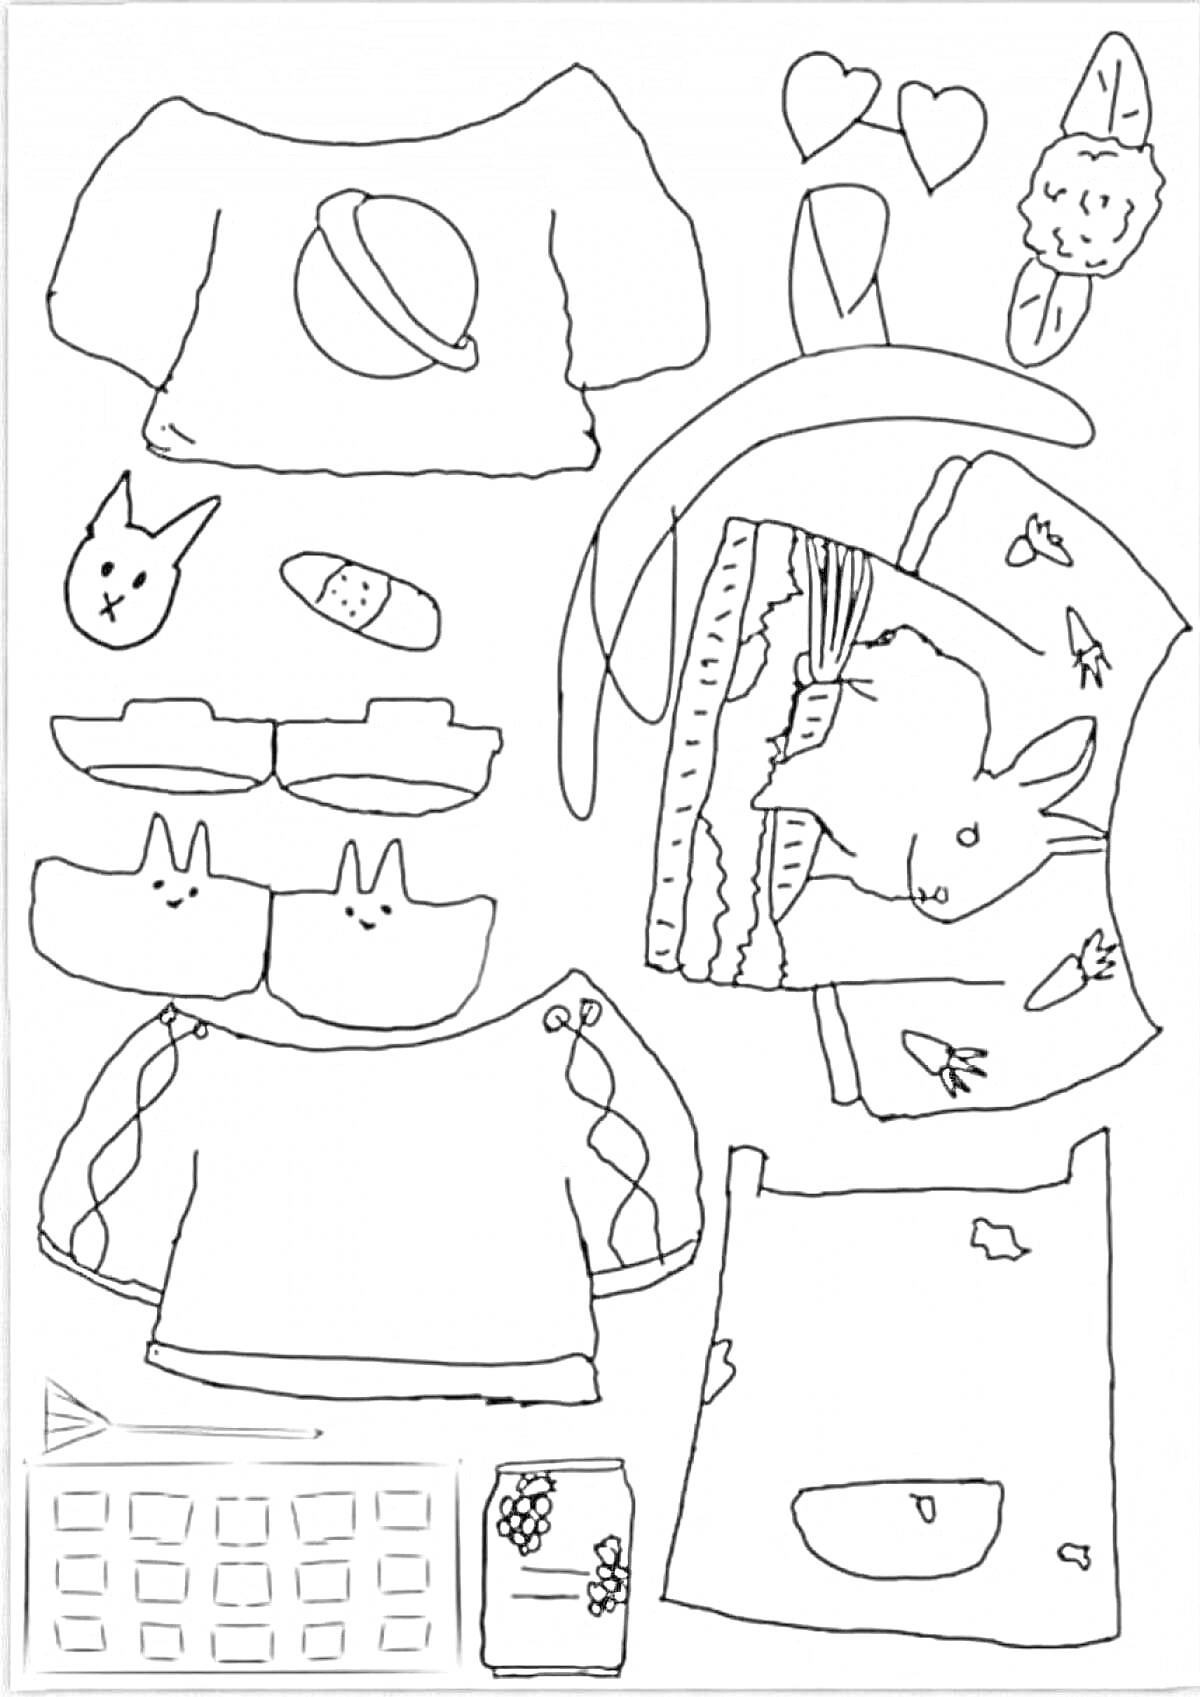 Раскраска Уточка Лалафанфан с одеждой и аксессуарами - кофточки, кроссовки, голова уточки, трусики с апельсином, носочки, сердечки, резинки, маска для сна, юбка, книга, карандаш